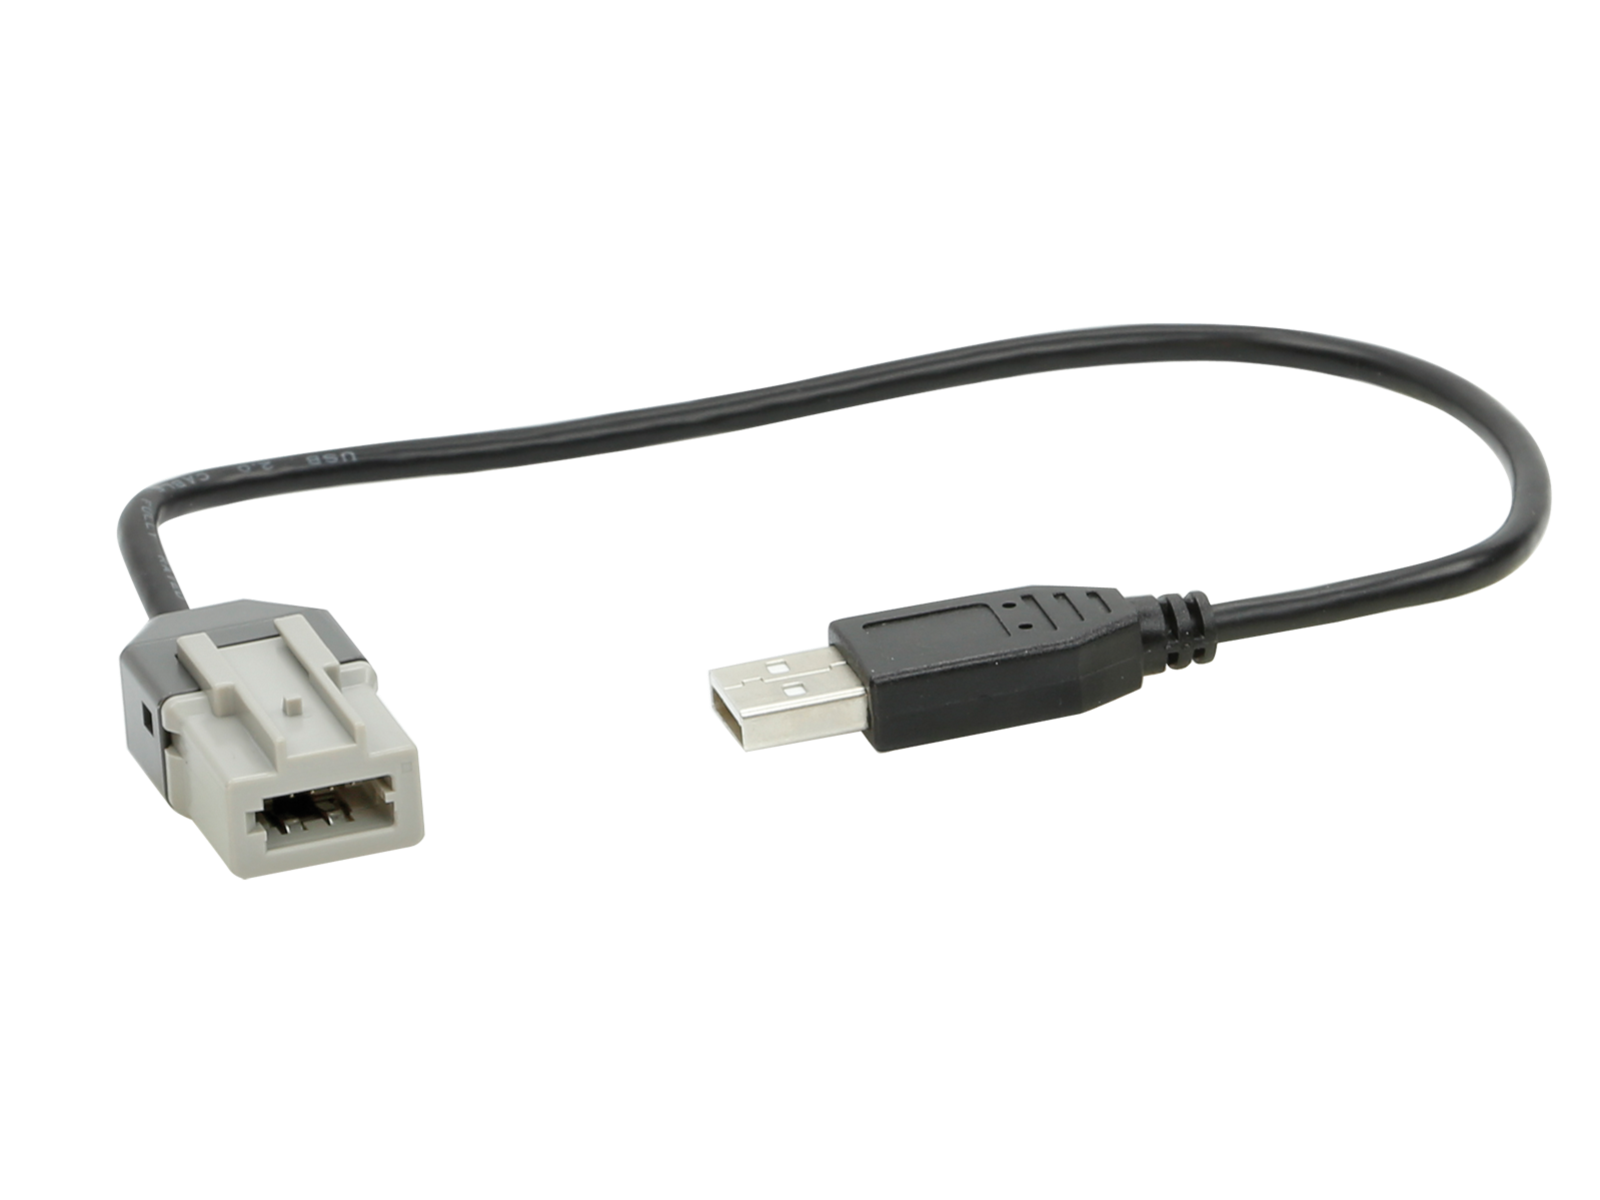 USB Adapter Citroen/Peugeot/Toyota diverse Fahrzeuge - USB / AUX / HDMI  fahrzeugspezifisch - USB / AUX / HDMI Austausch Kit - USB - Sortiment